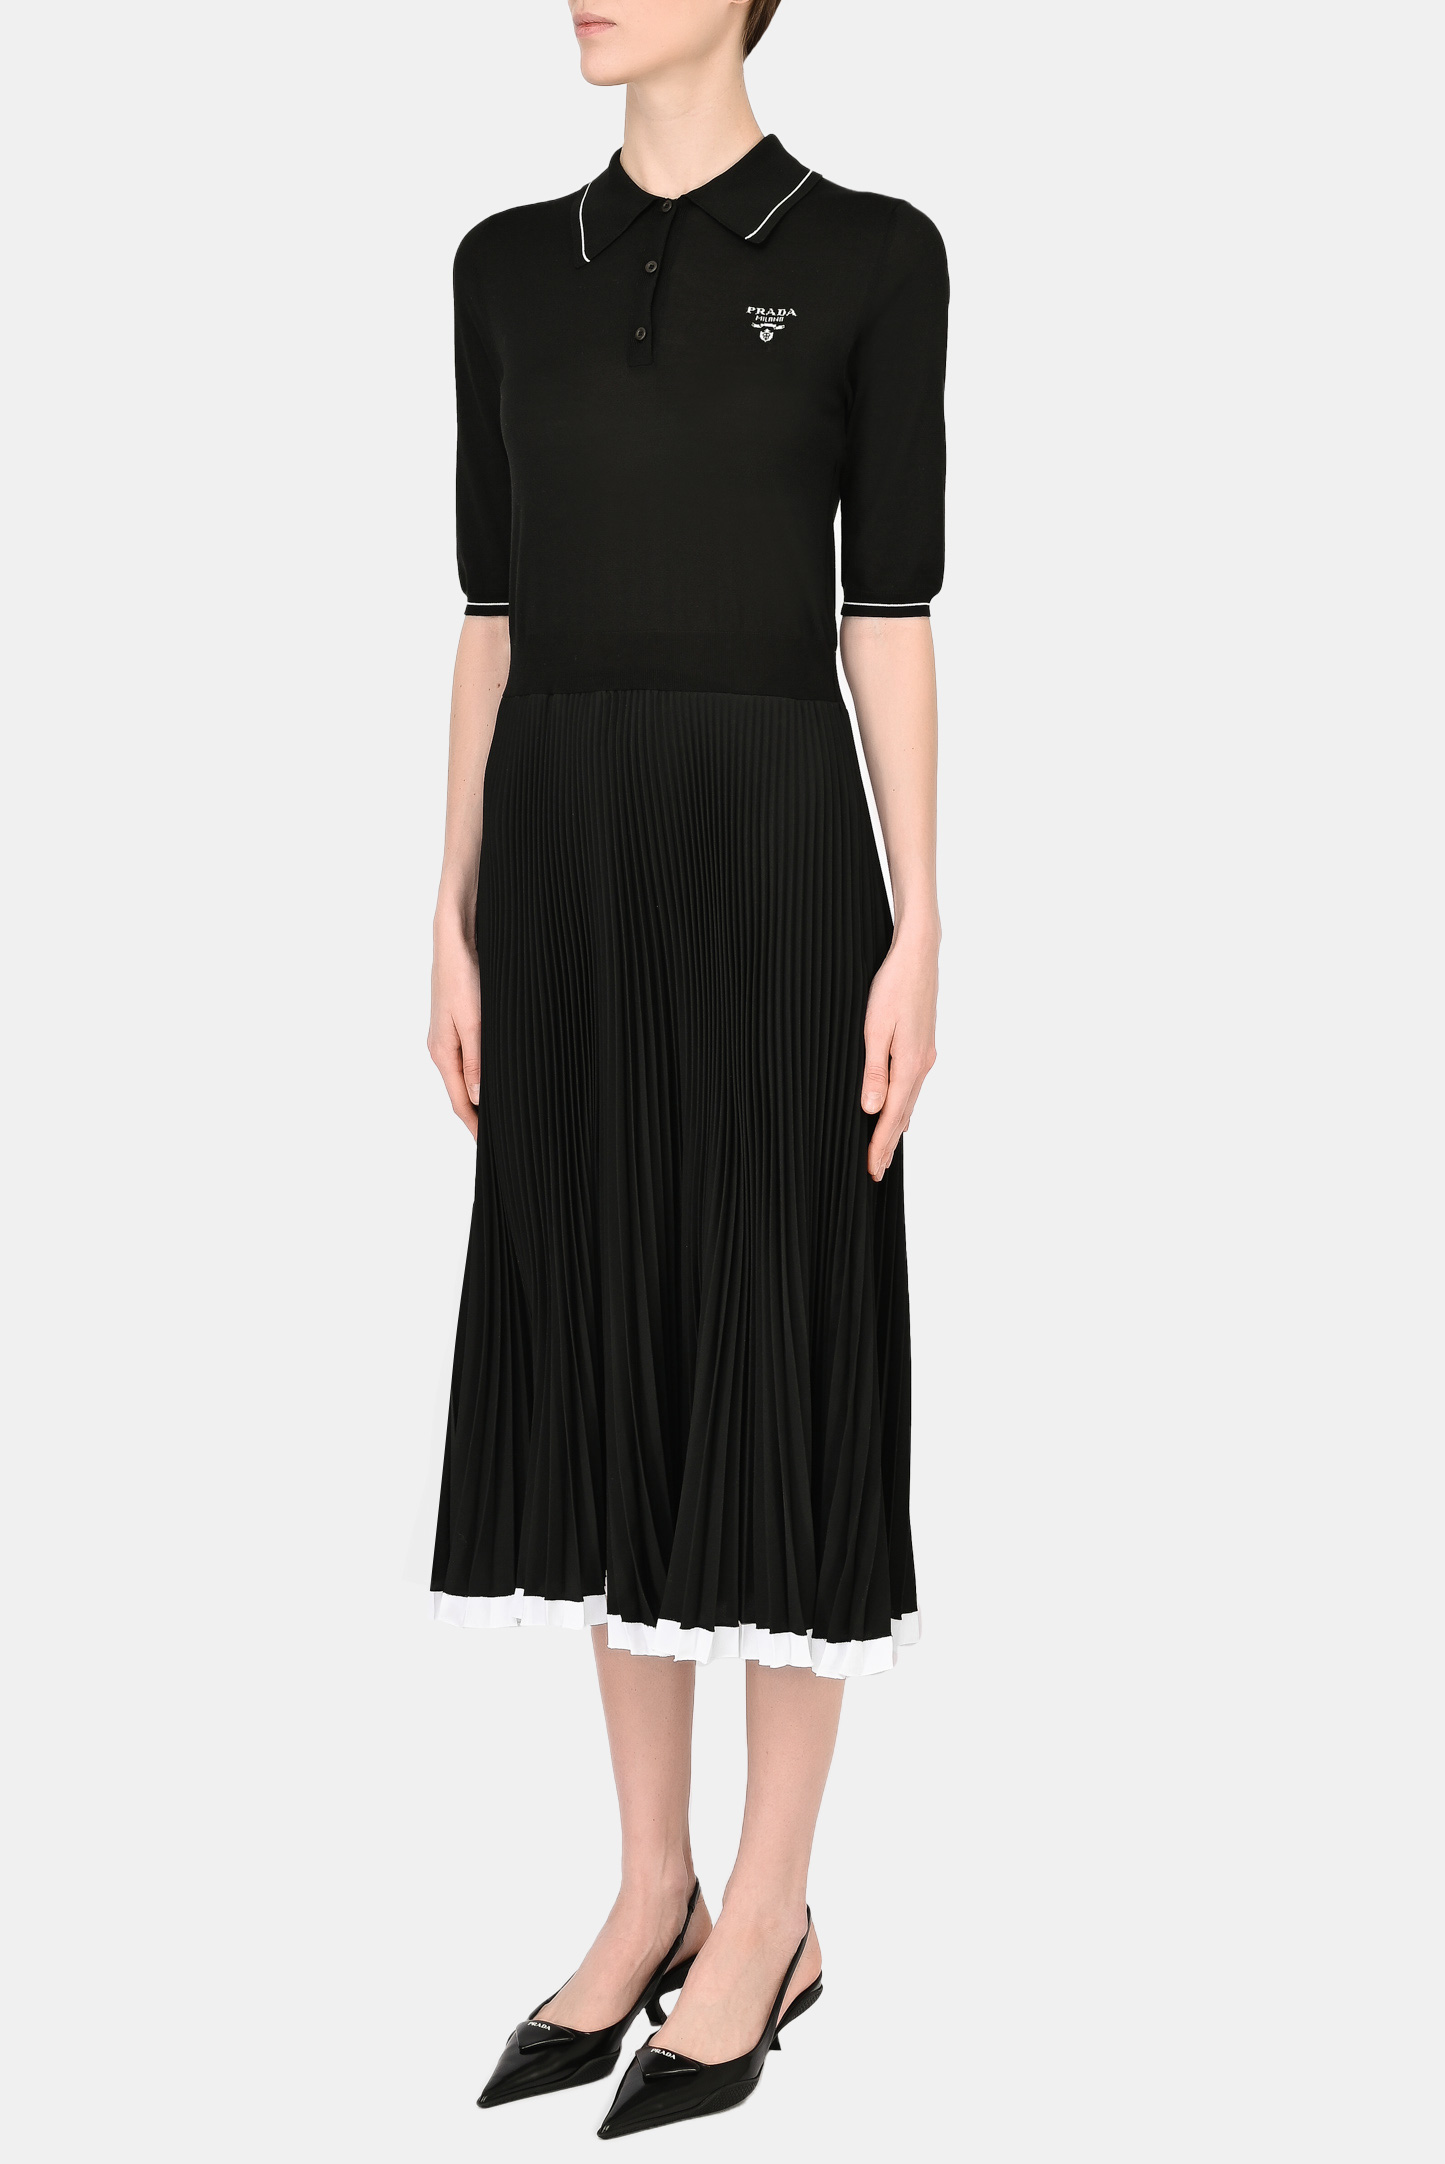 Платье PRADA P3B06M 10FT, цвет: Черный, Женский